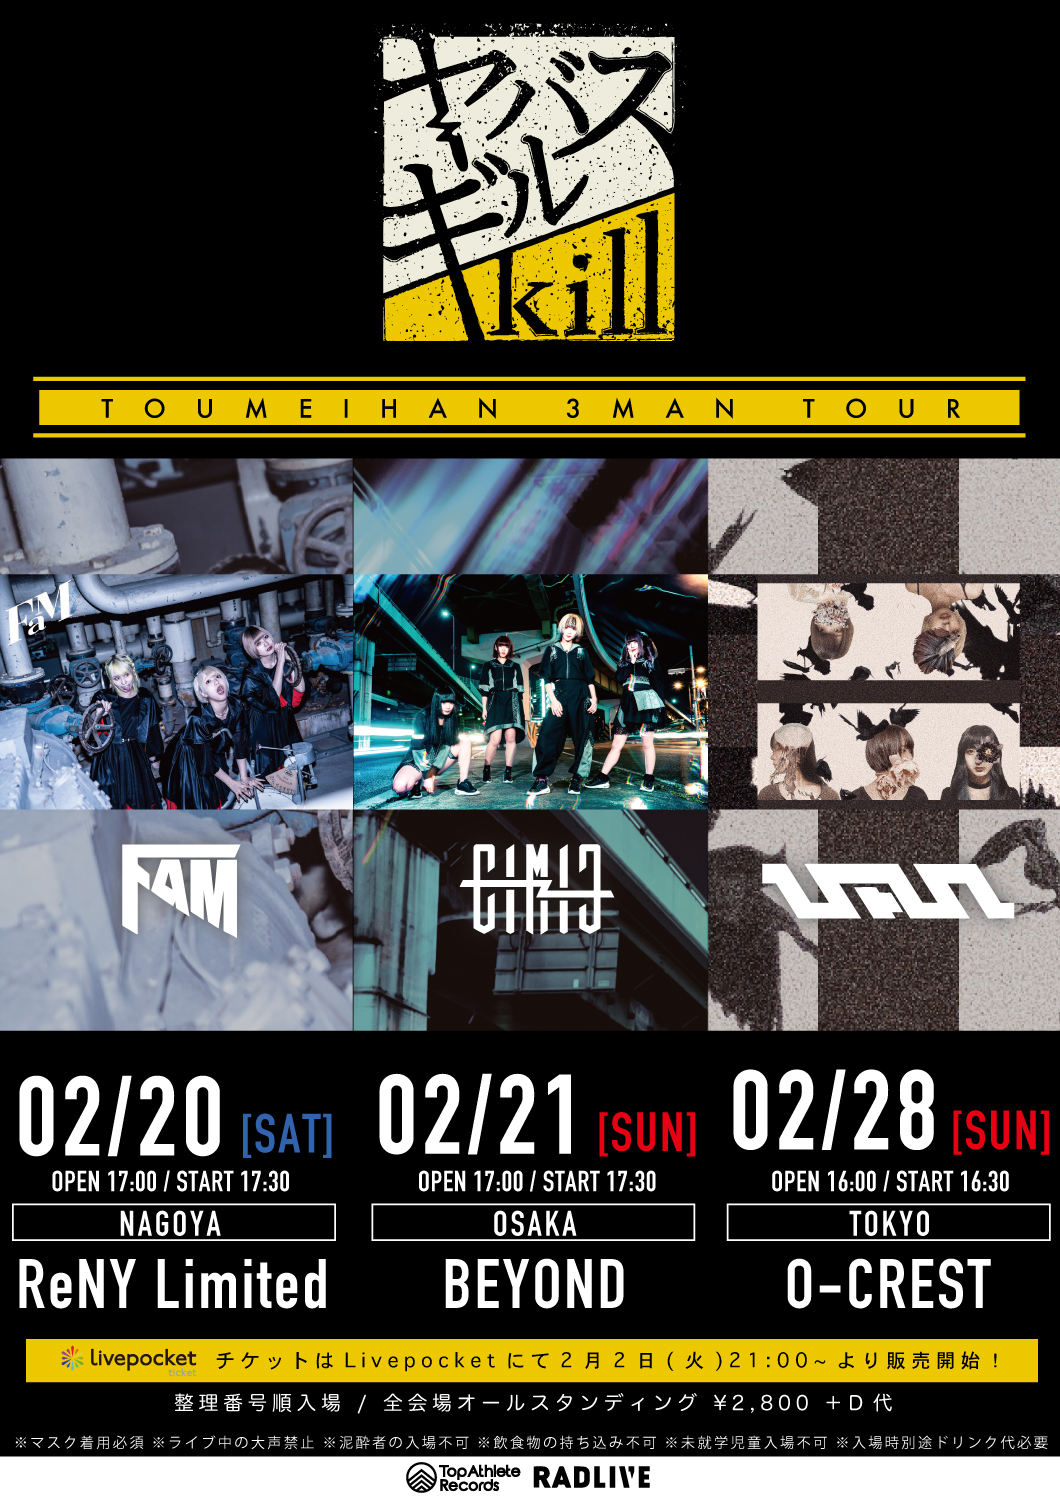 “ヤバスギルkill “ -TOUMEIHAN 3MAN TOUR-